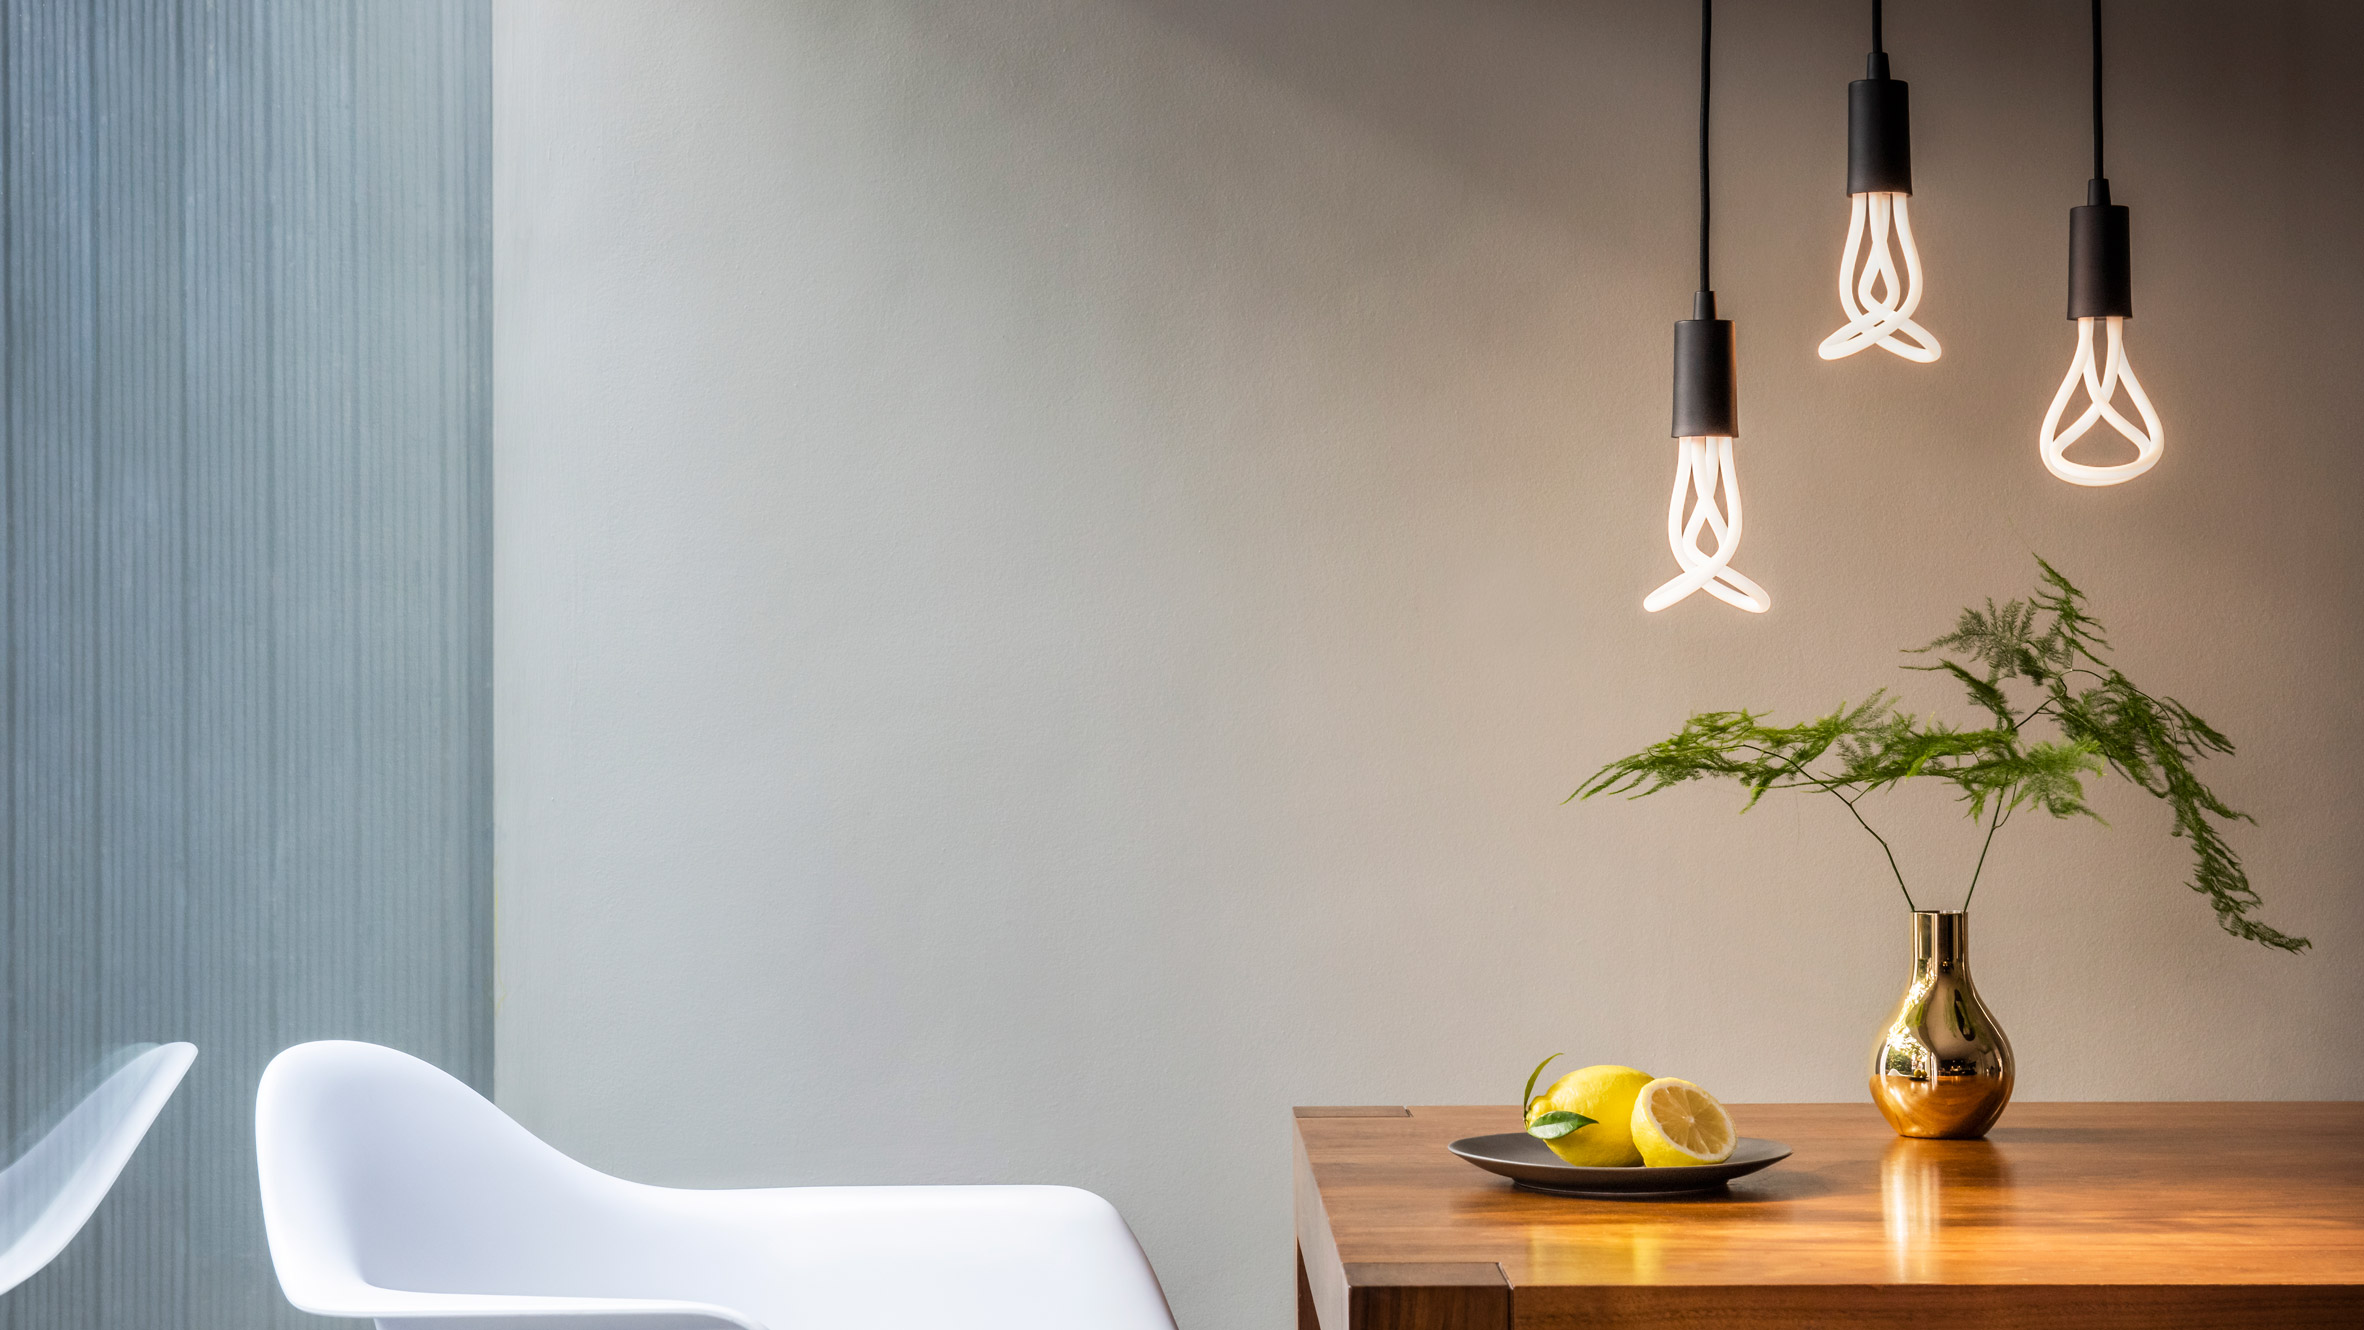 Plumen creates LED of Design the light bulb